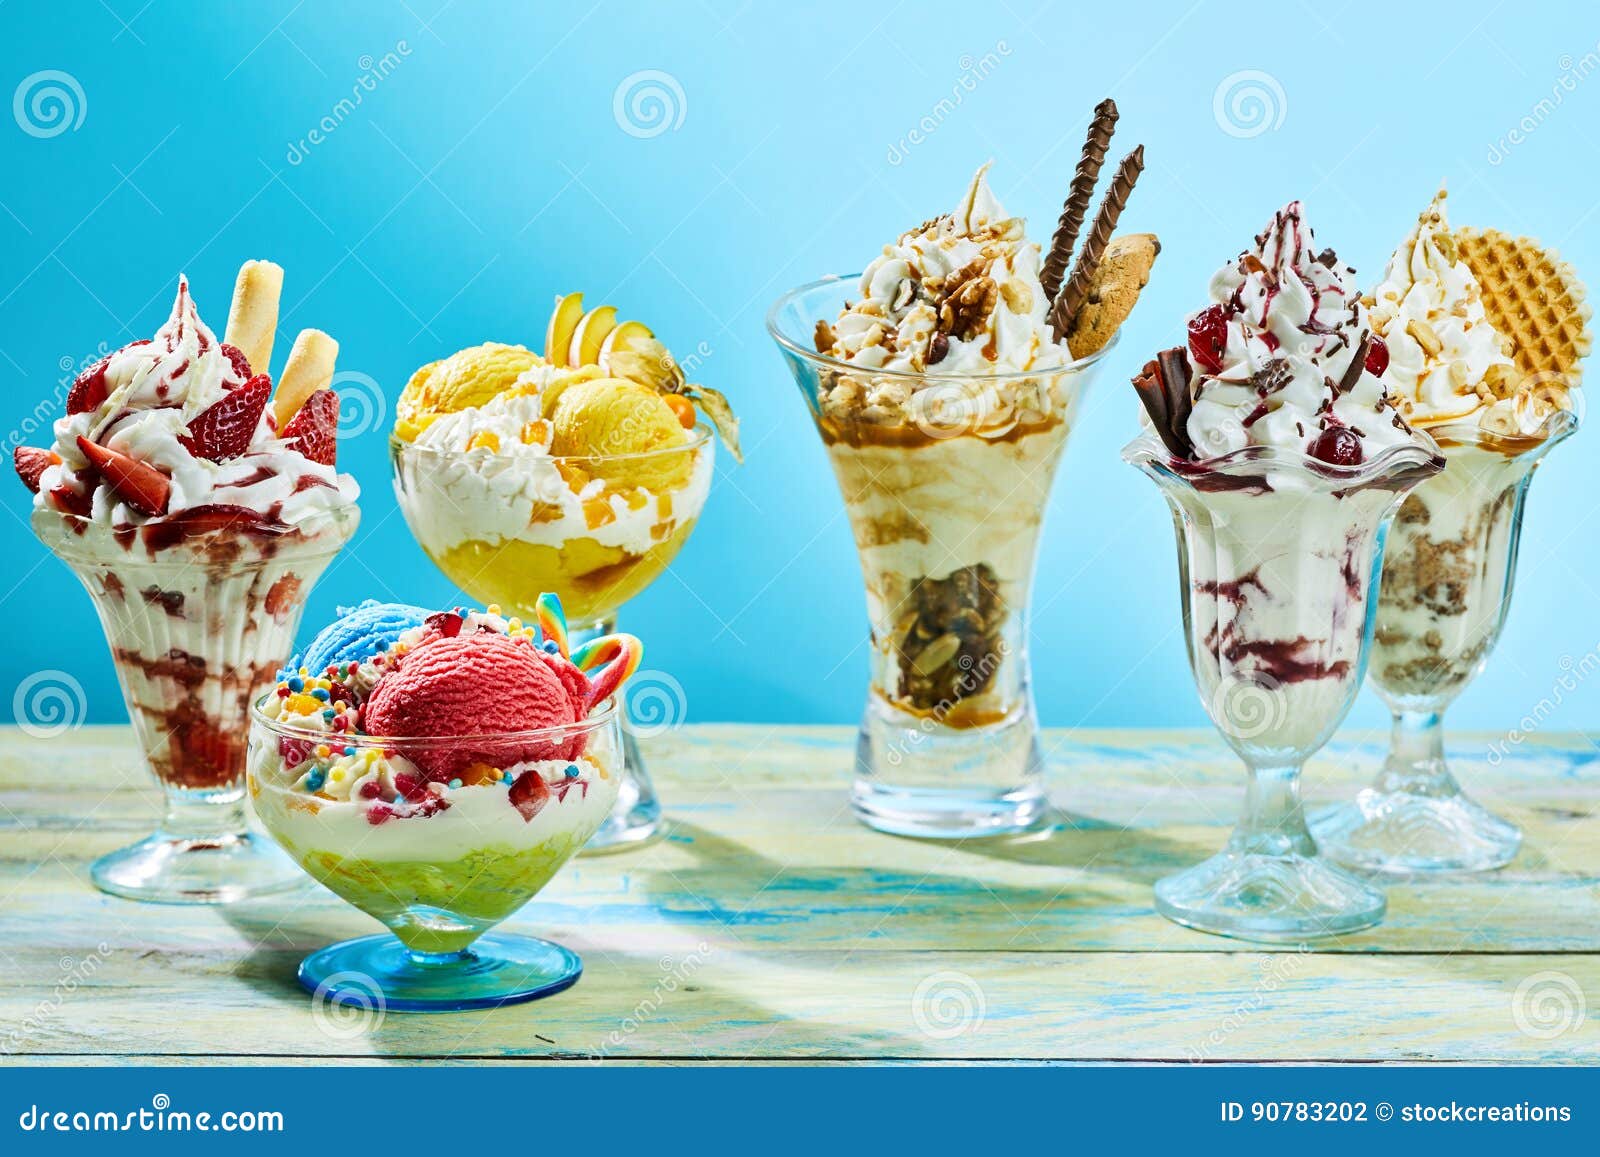 five different flavor ice cream sundaes